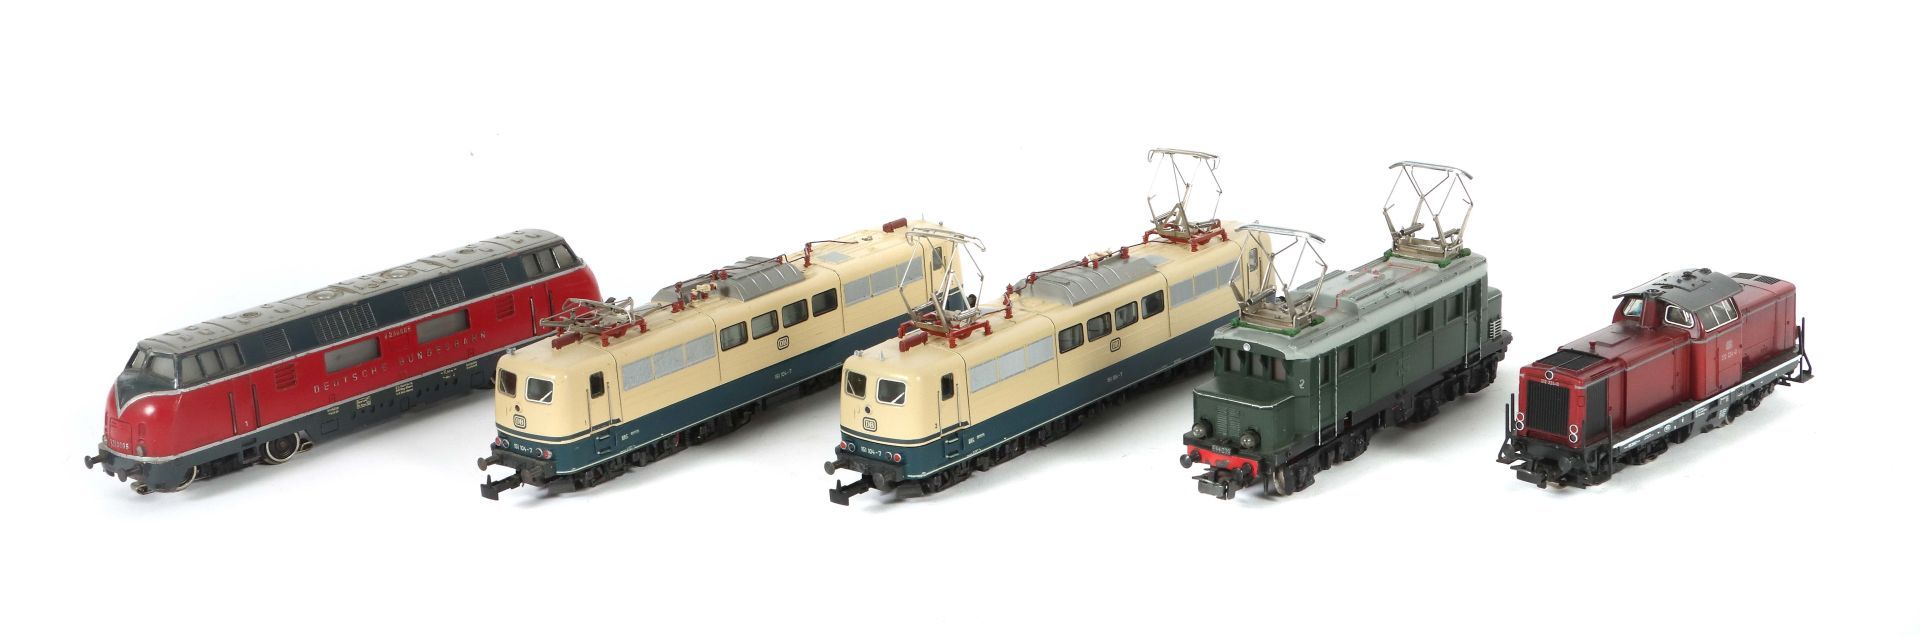 5 Lokomotiven Märklin, Spur H0, 1 x